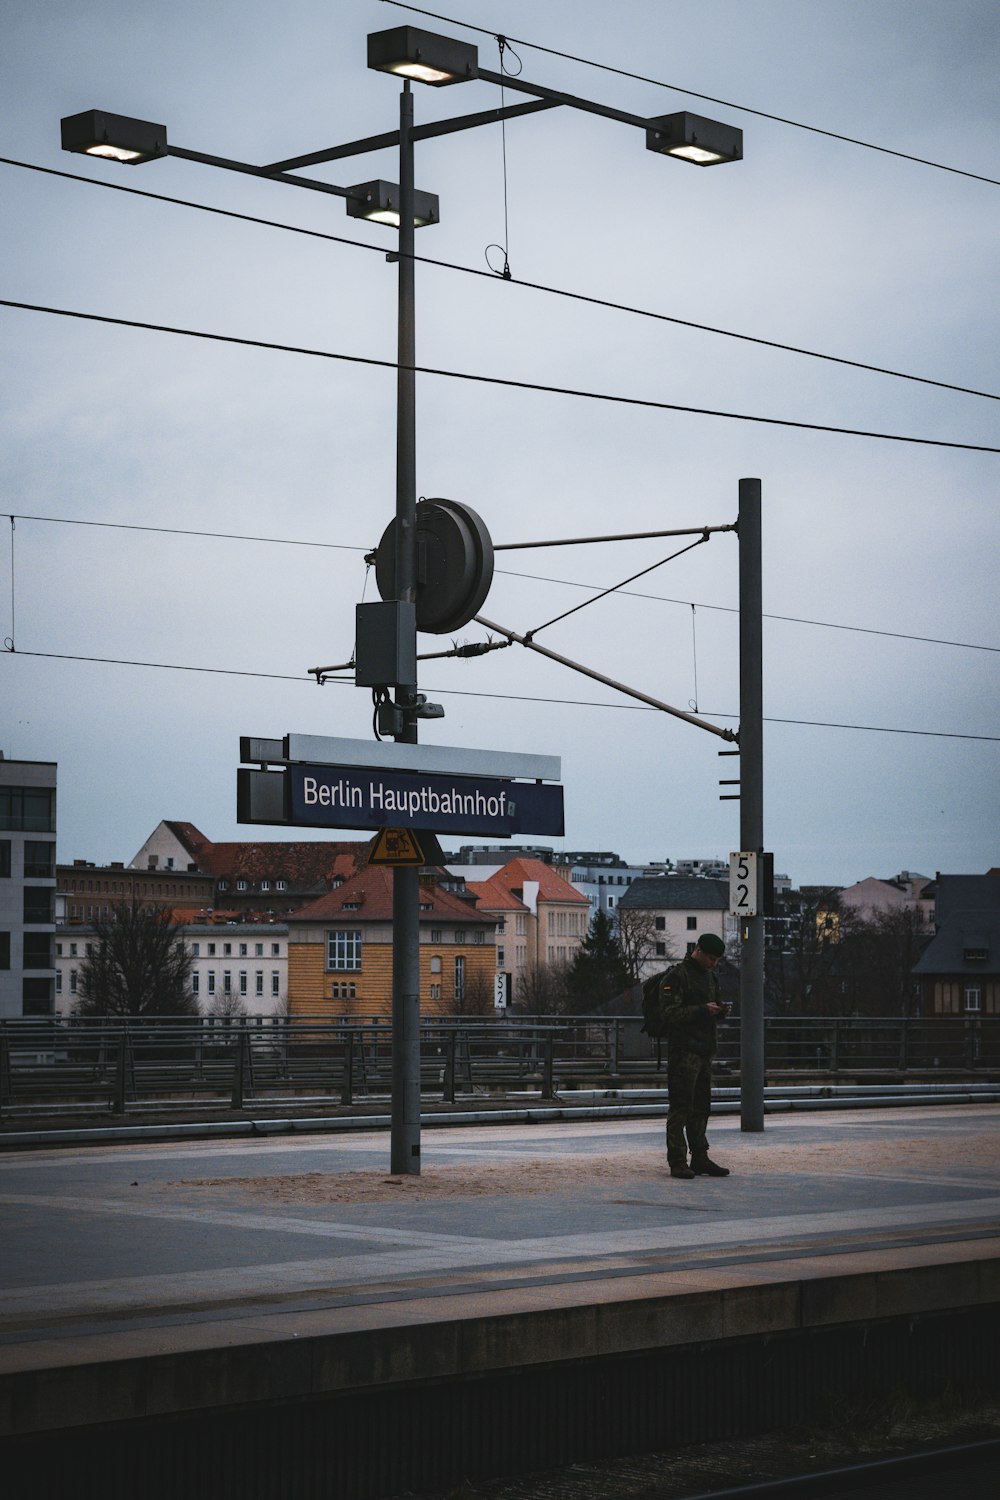 Ein Mann steht auf einem Bahnsteig neben einem Straßenschild